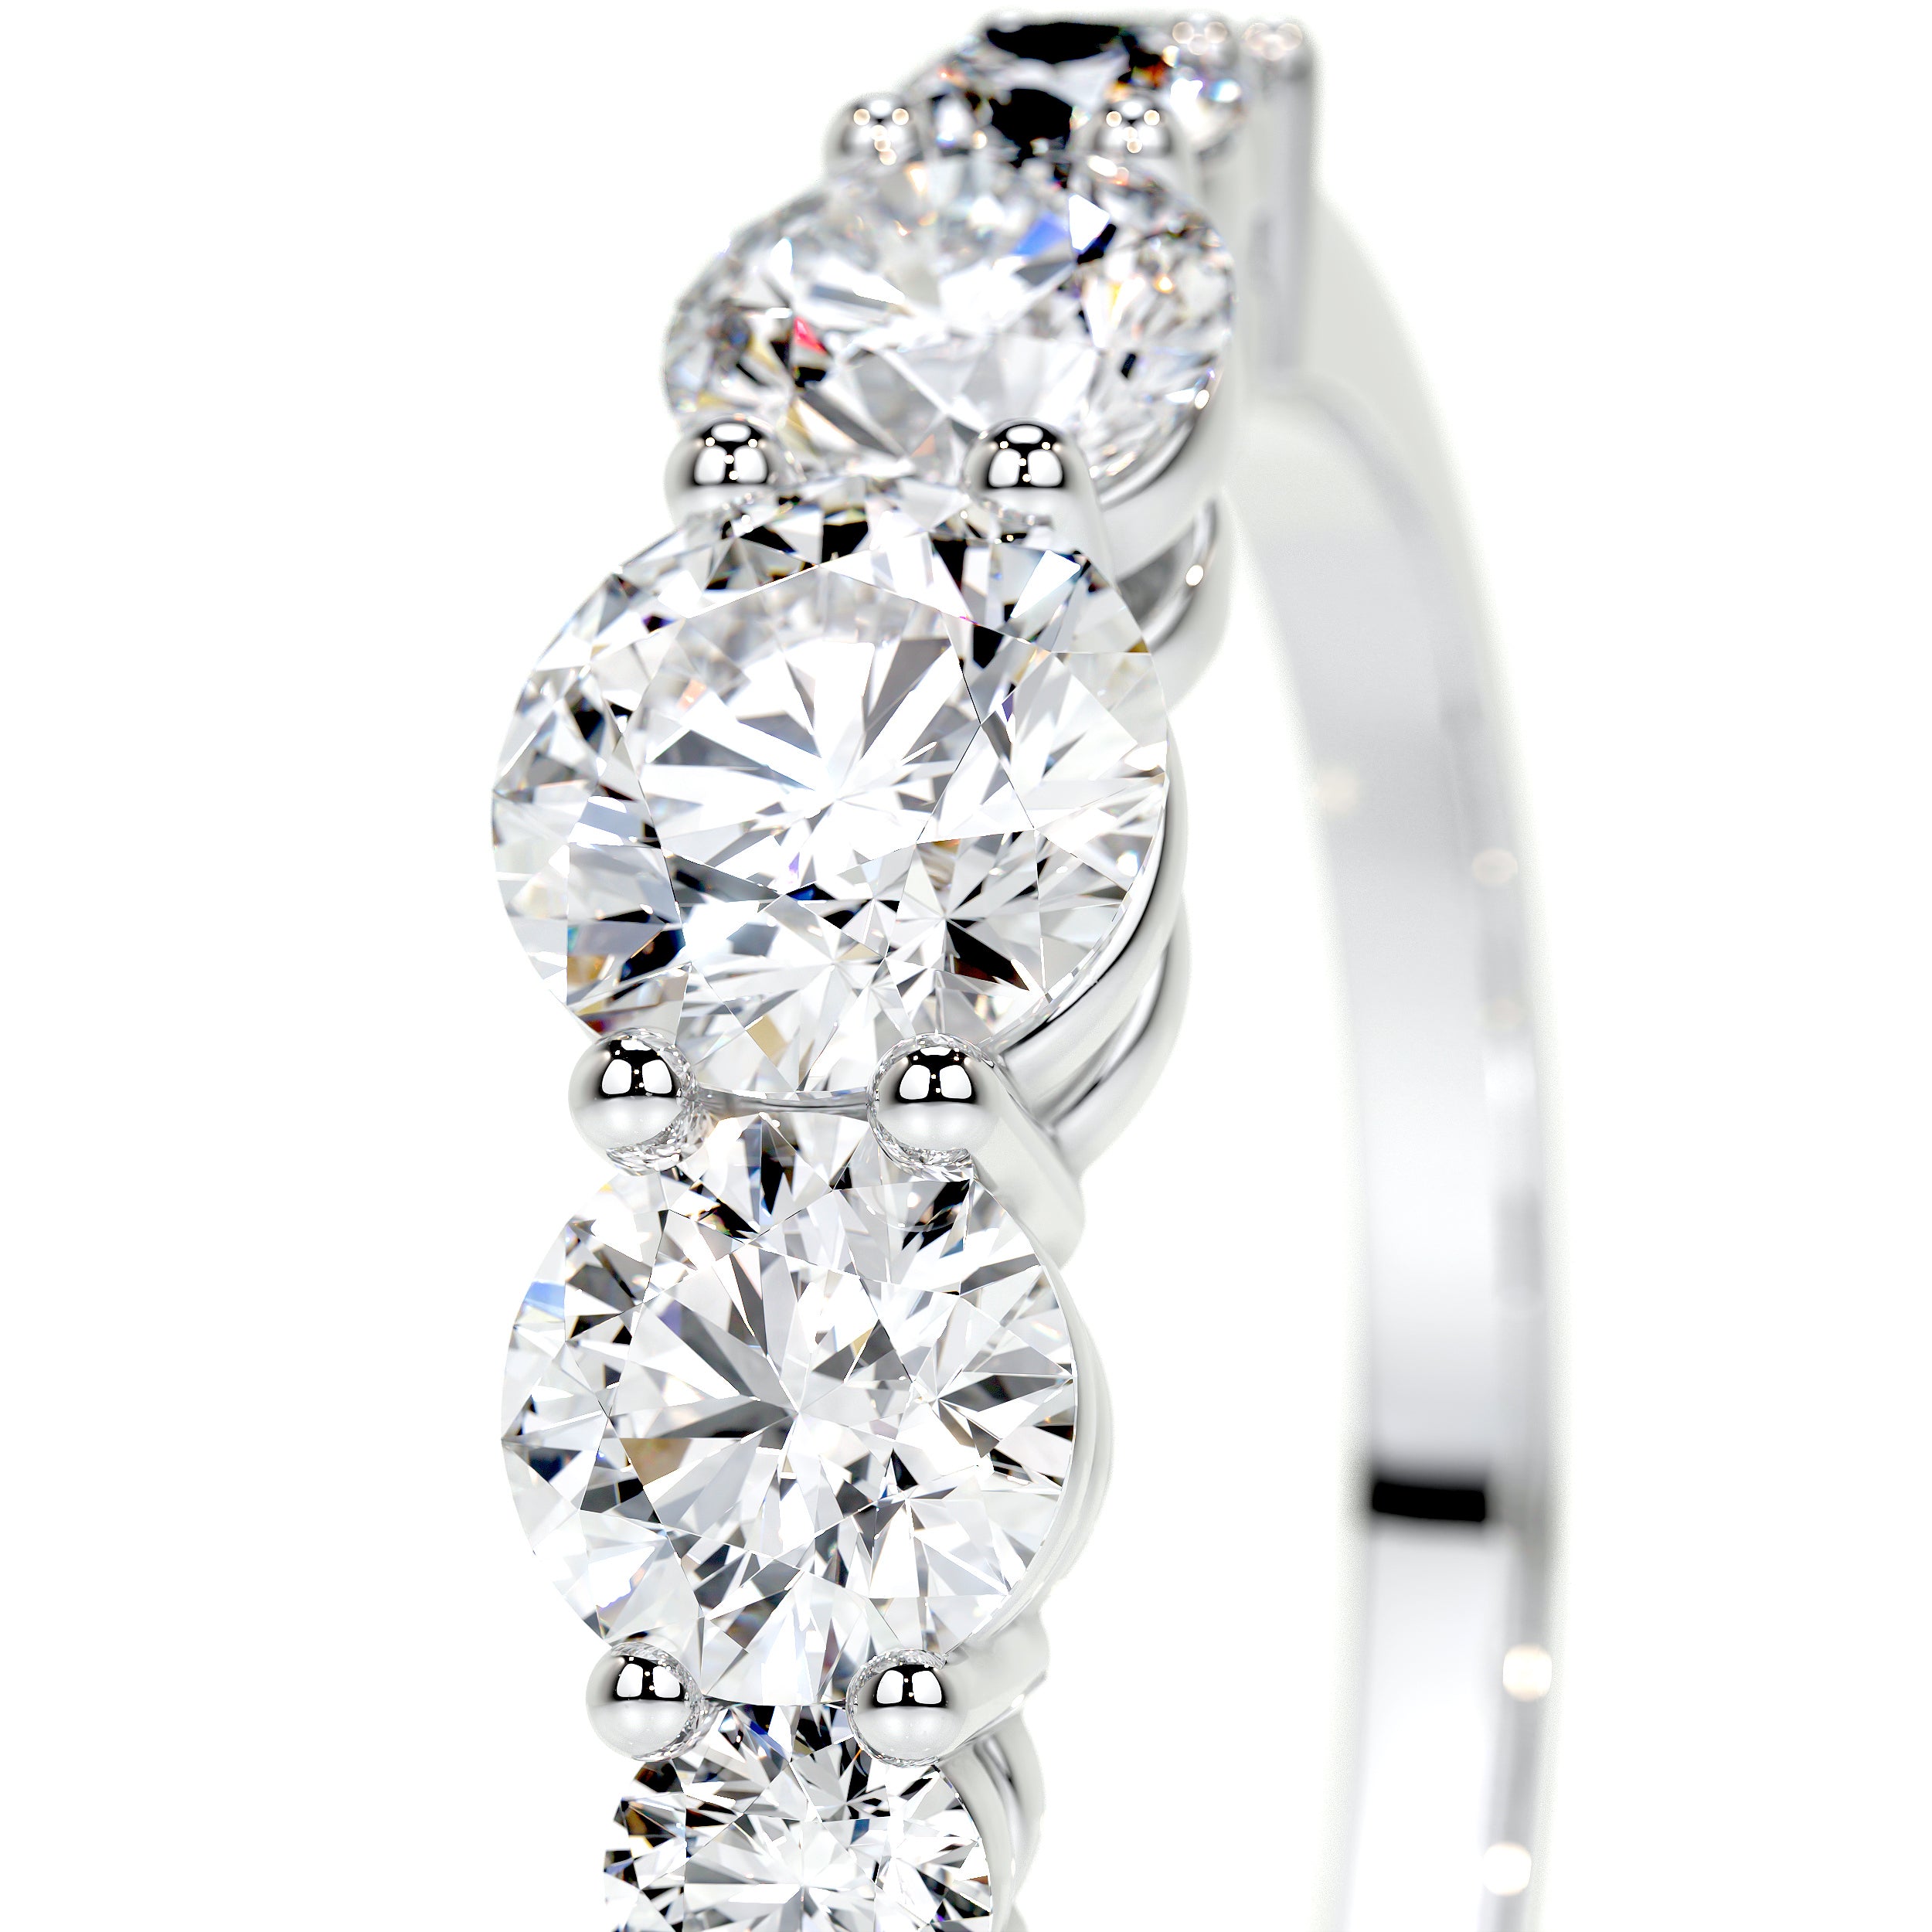 Makenzi Lab Grown Diamond Ring   (1.50 Carat) -Platinum